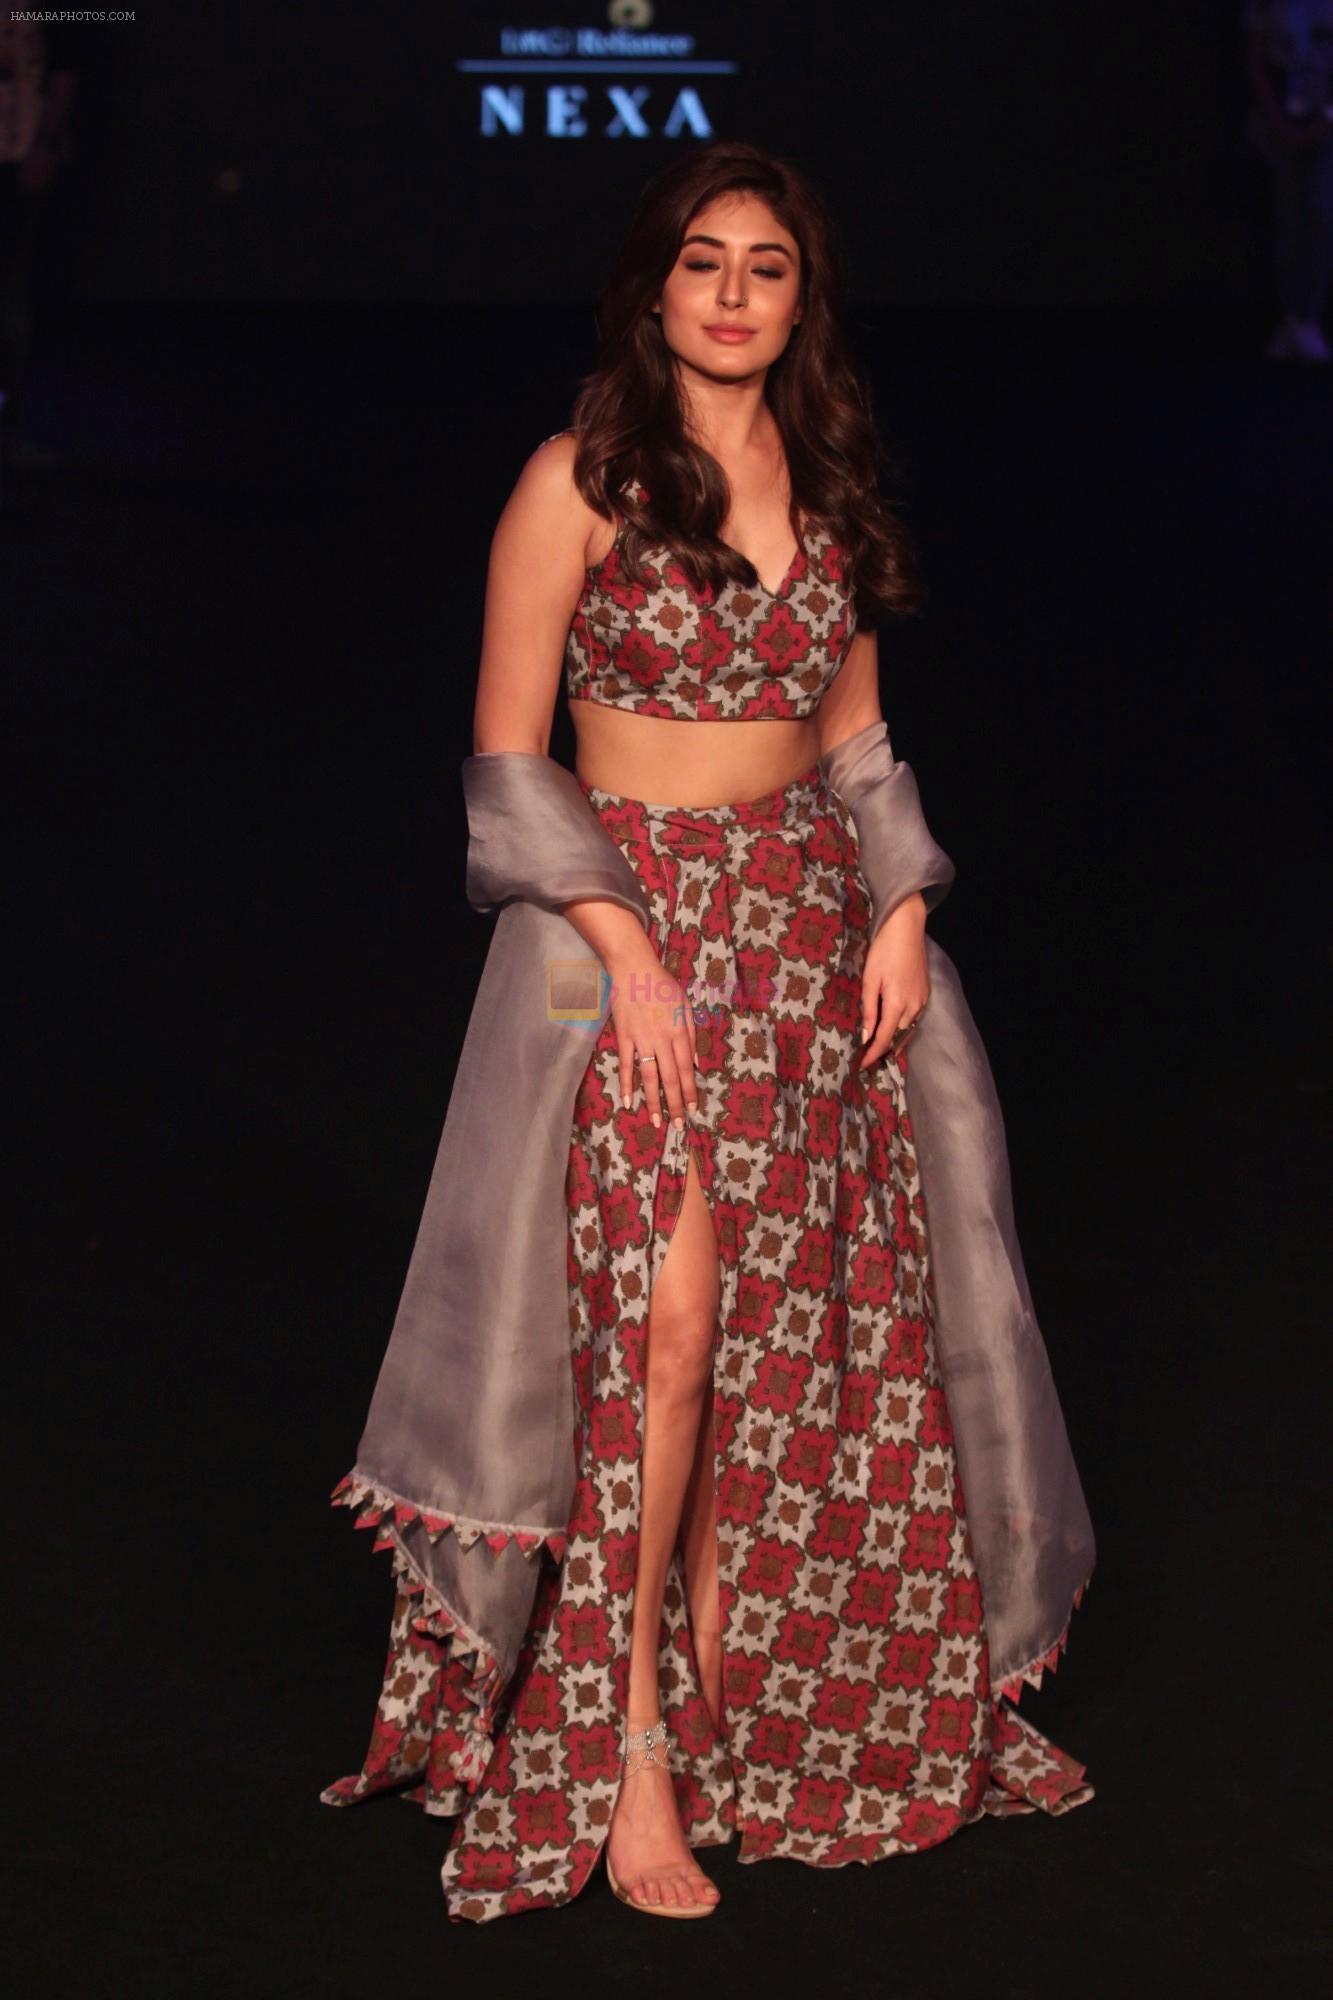 Kritika Kamra walk the Ramp on Day 5 at Lakme Fashion Week 2019 on 3rd Feb 2019